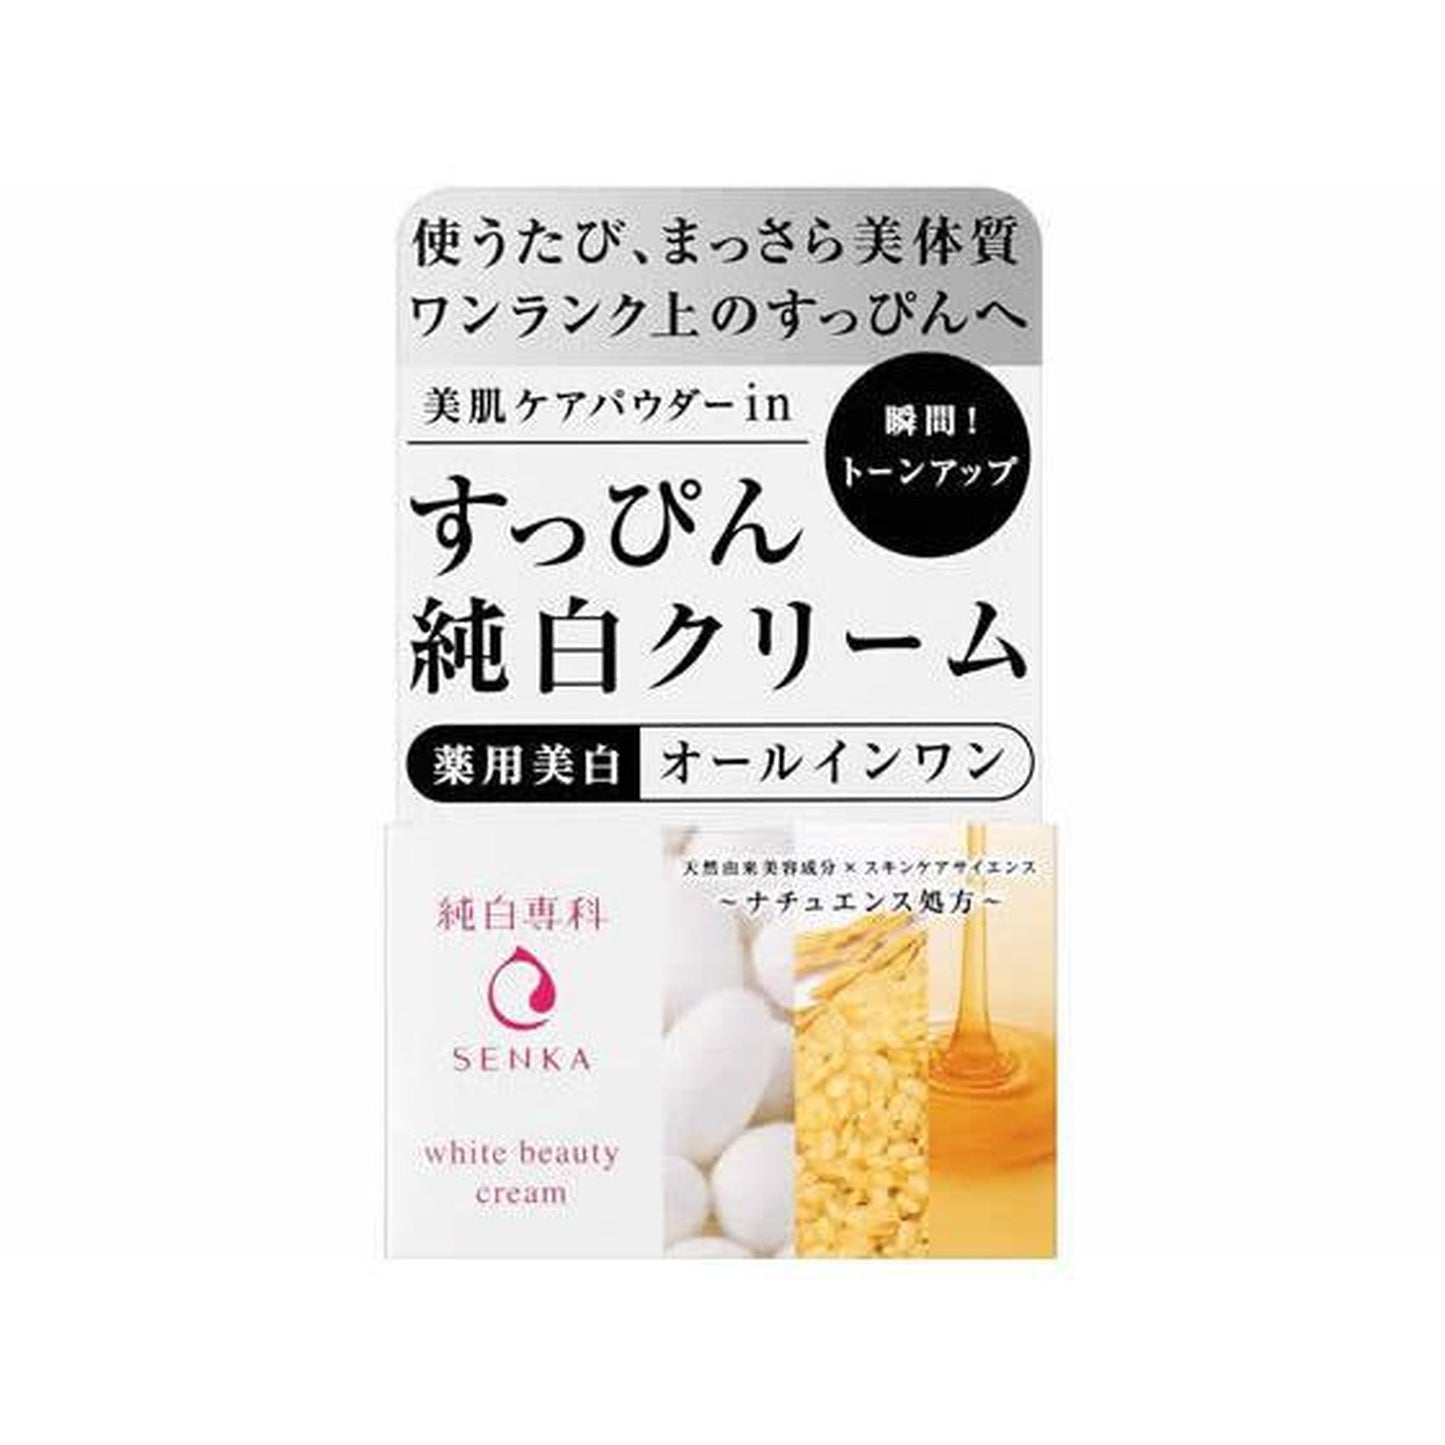 Senka Junpaku Senka Suppin Pure White Cream 100g